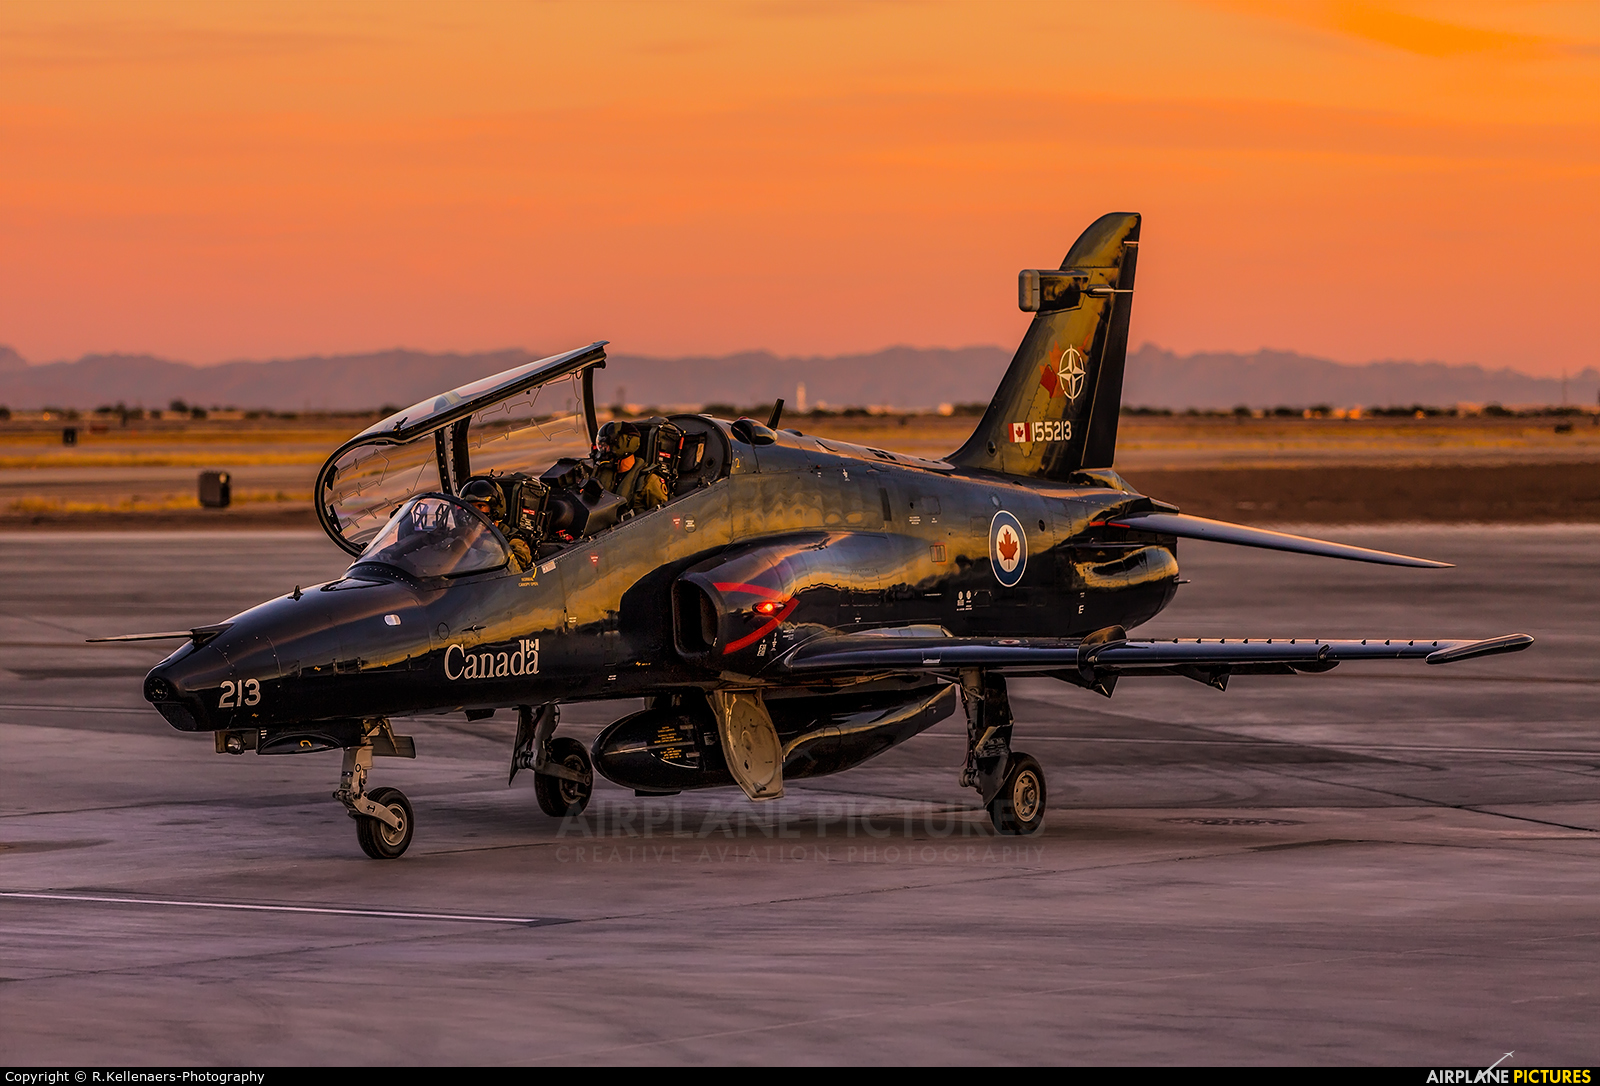 Canada - Air Force 155213 aircraft at Phoenix - Mesa Gateway